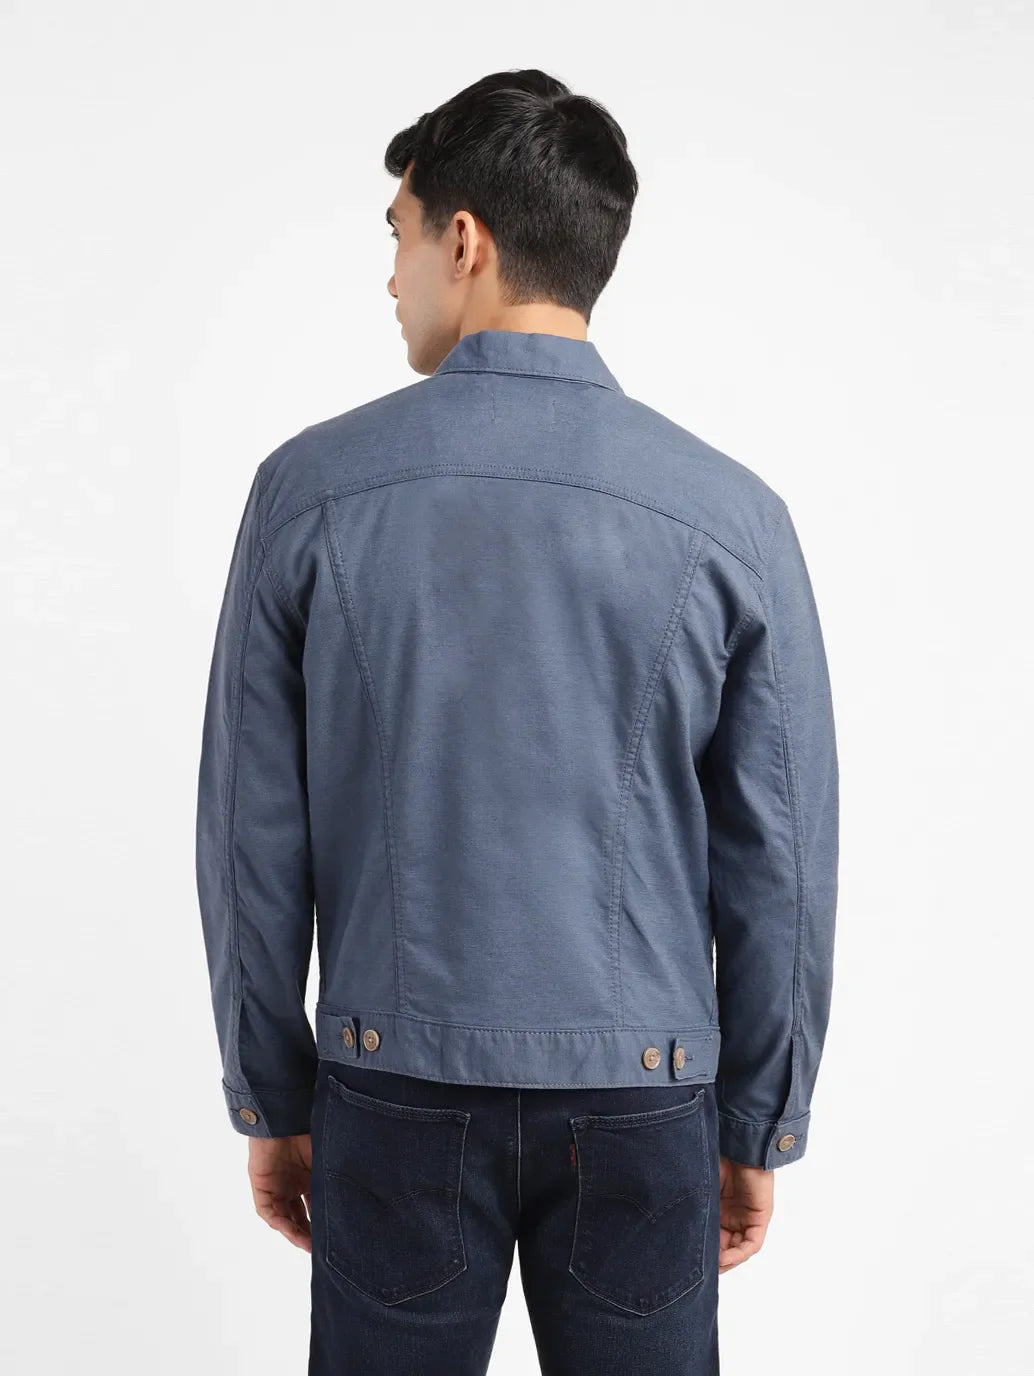 Men's Solid Grey Spread Collar Jacket